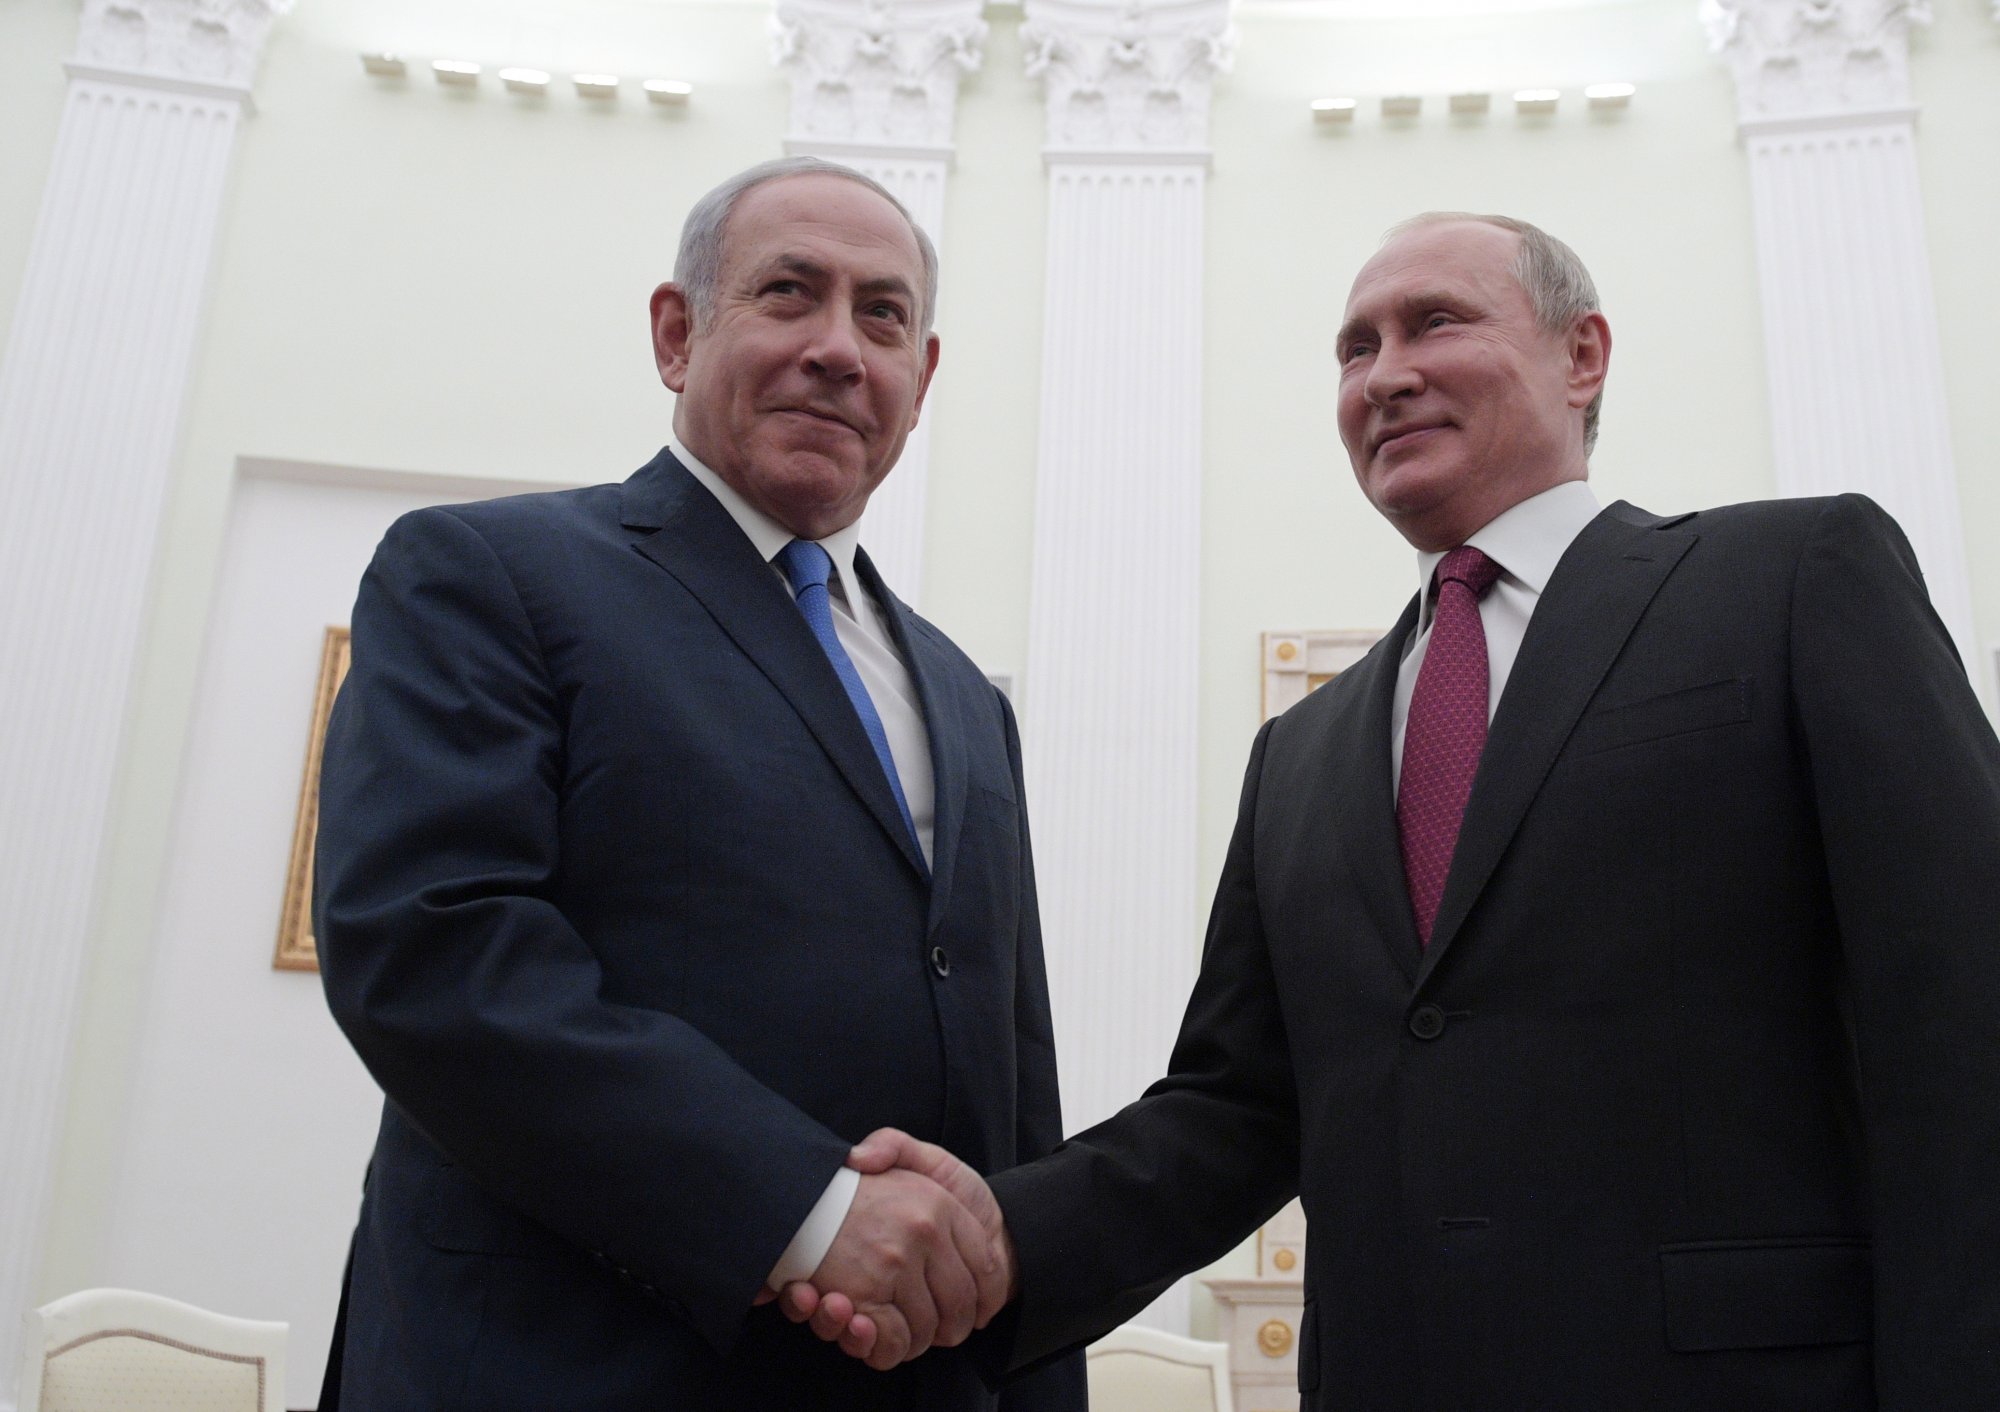 Γιατί η Ρωσία ακροβατεί στον πόλεμο Χαμάς-Ισραήλ - Οι ρωσικοί ελιγμοί στη Μέση Ανατολή